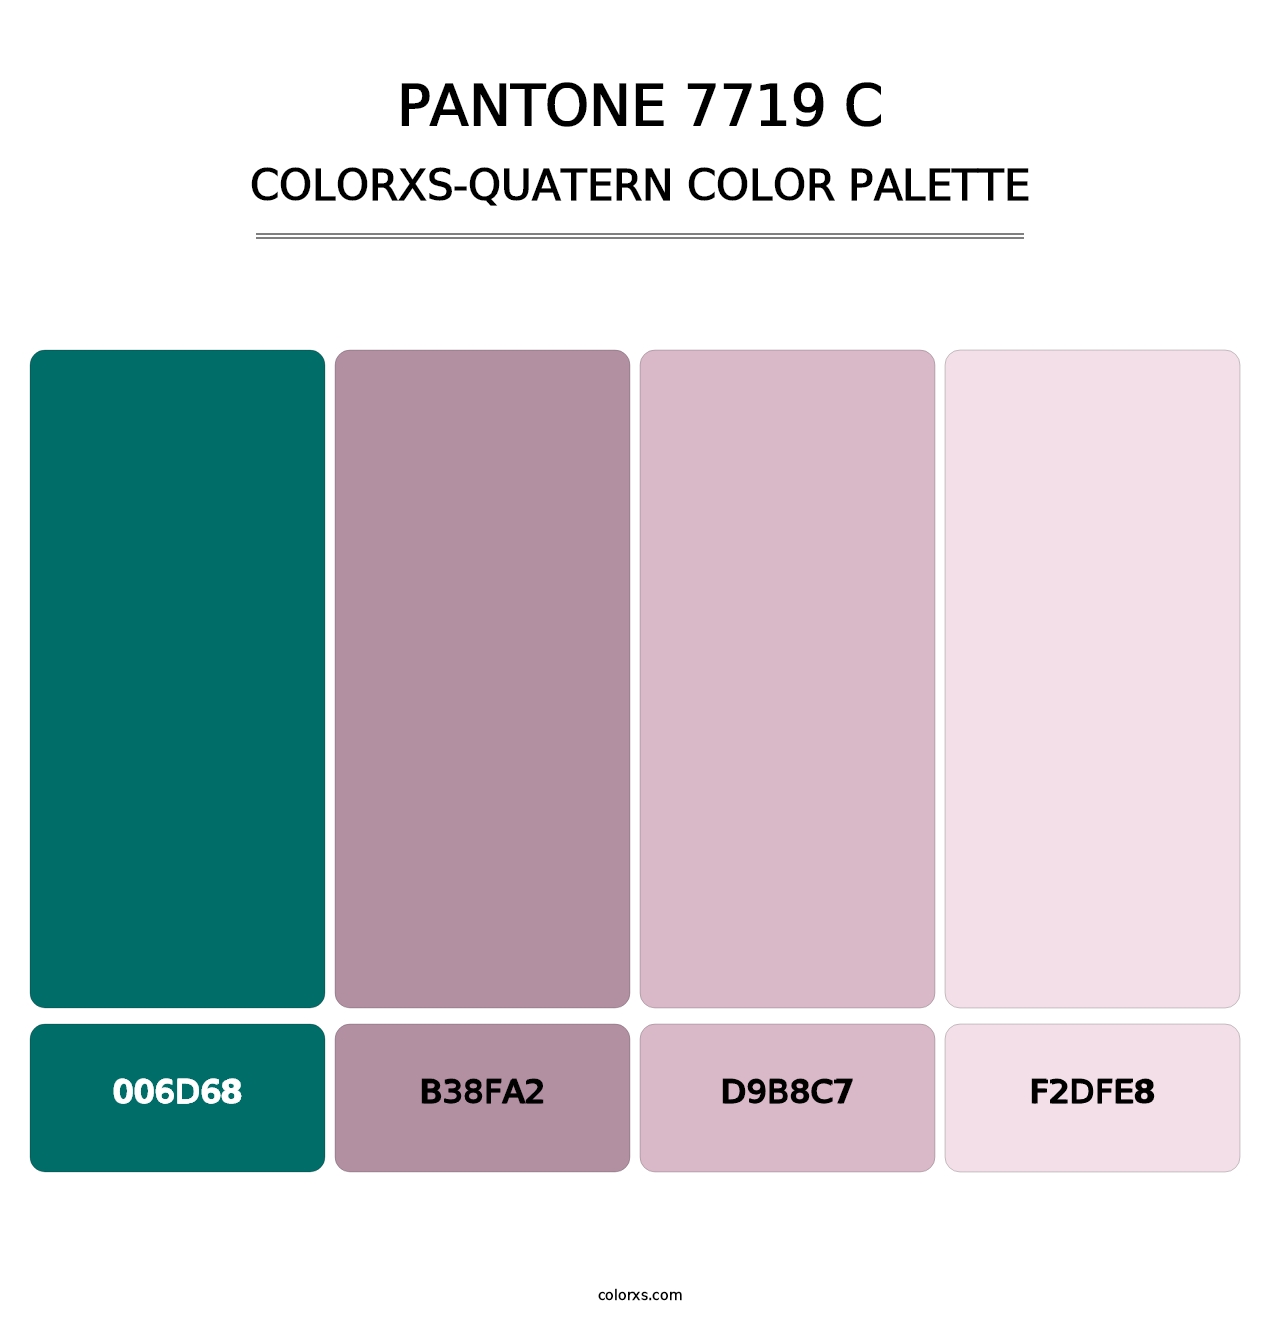 PANTONE 7719 C - Colorxs Quatern Palette